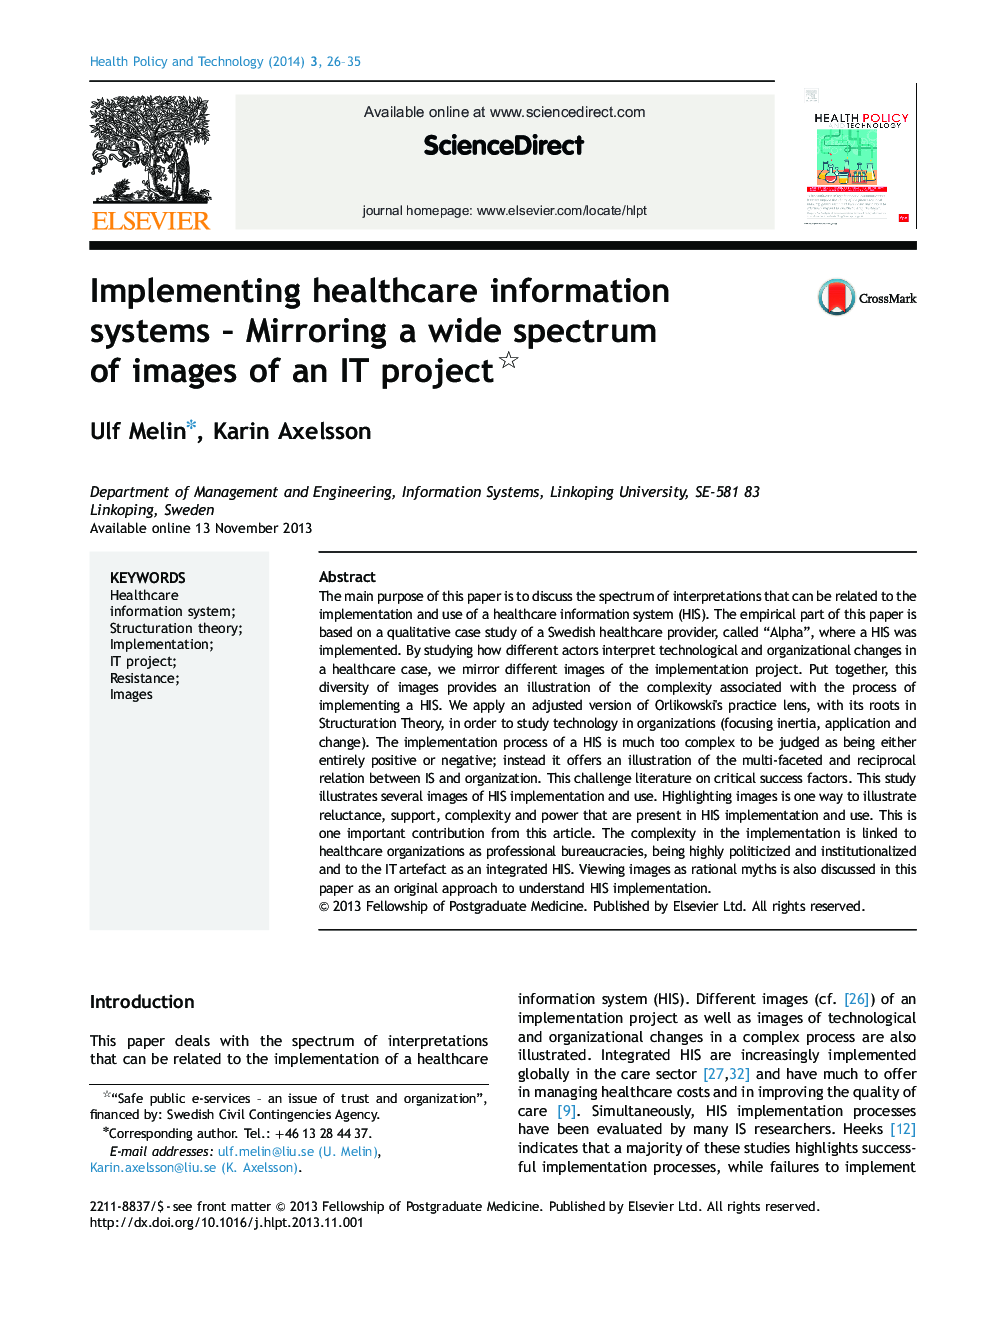 پیاده سازی سیستم های اطلاعات مراقبت های بهداشتی - نمایش یک طیف گسترده ای از تصاویر یک پروژه فناوری اطلاعات